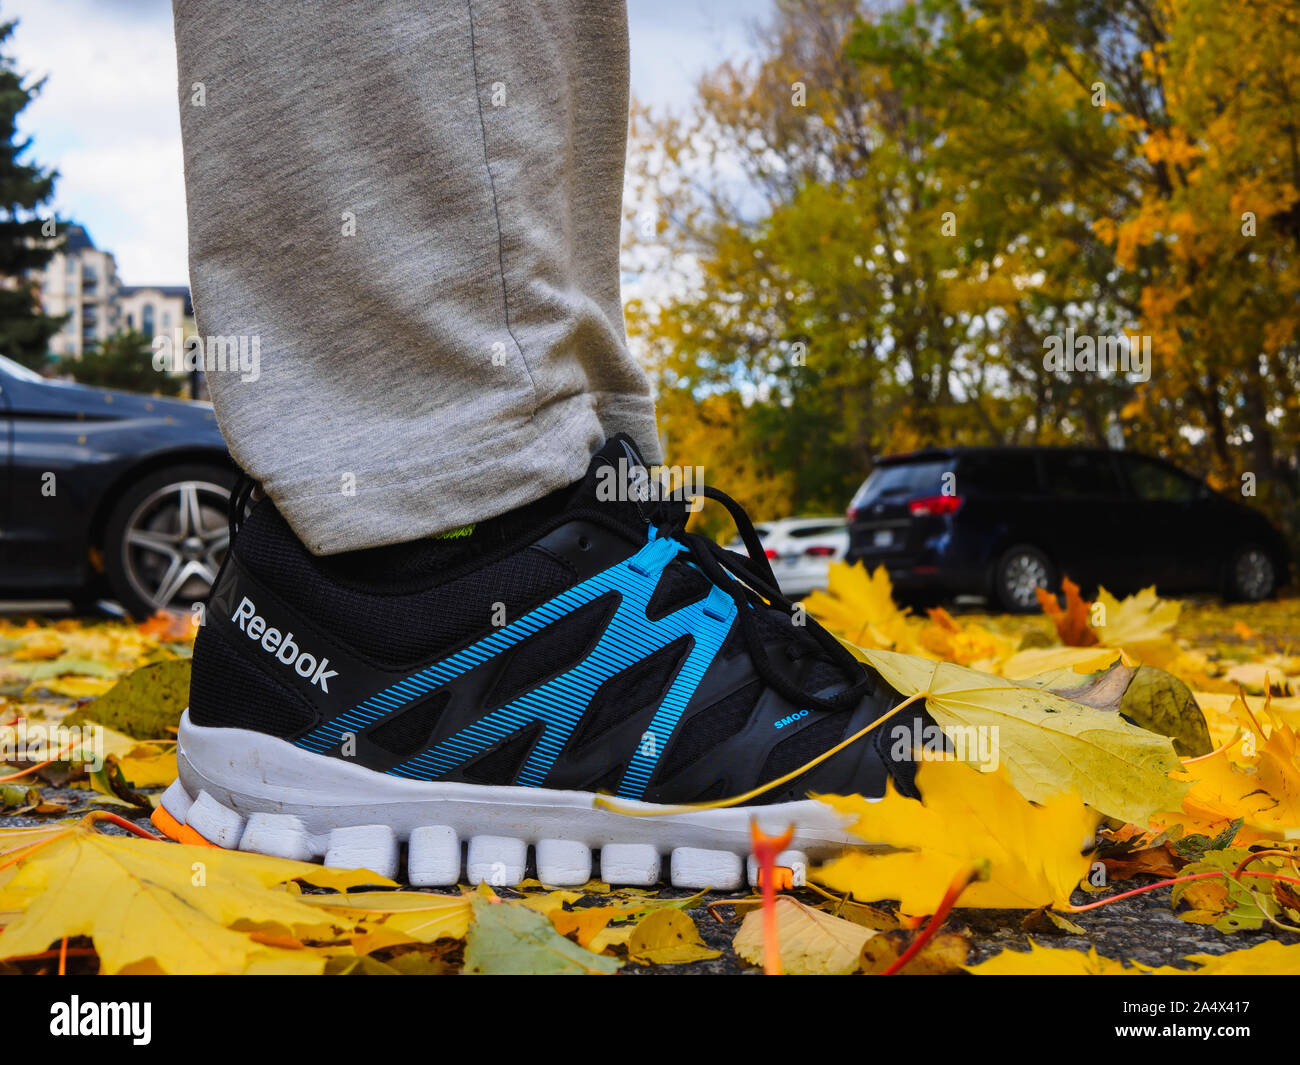 Reebok RealFlex 4 bequeme Schuhe im Freien im Herbst, durch gelbe Ahorn  Blättern bedeckt Stockfotografie - Alamy